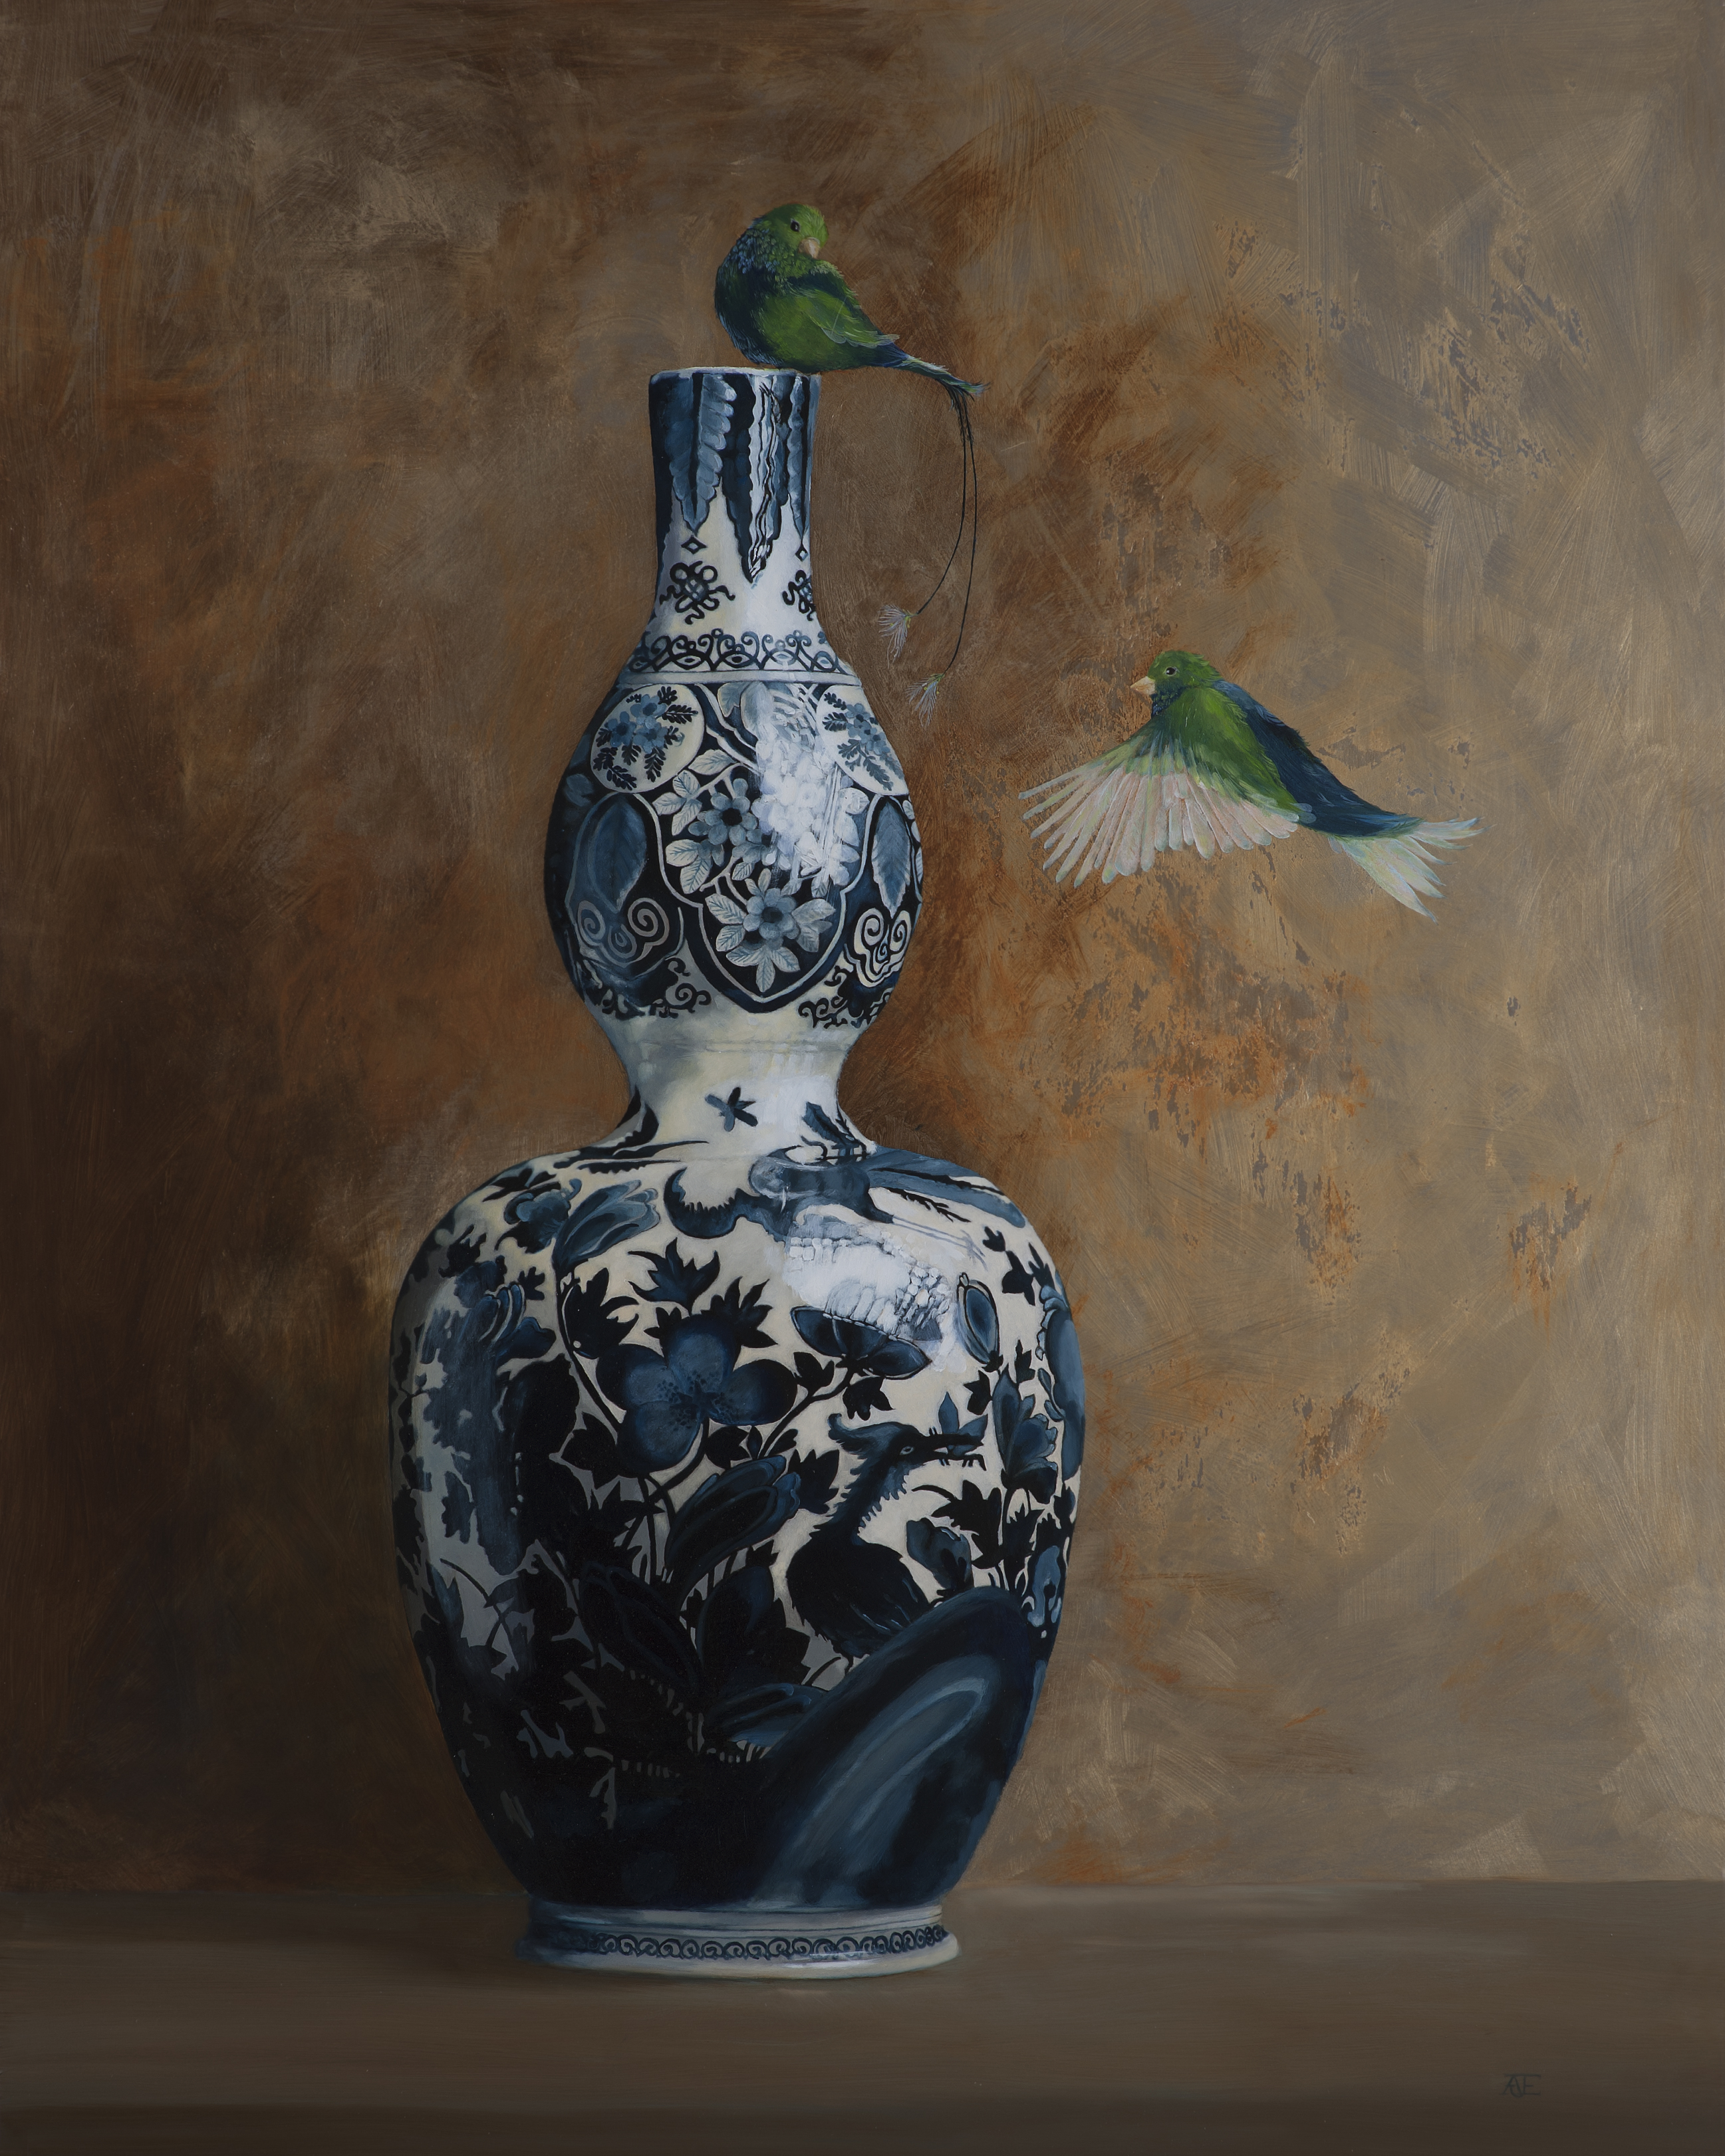 Een olieverfportret op een paneel van 80 x 100 cm, toont twee vogels boven en naast een Delftblauwe vaas, in Rembrandtiaans licht vanaf de rechterzijde. De achtergrond is geschilderd in goudbruine tinten met een lichte textuur. Dit vrije kunstwerk is in 2019 geschilderd door kunstenaar Anneke Ensing.